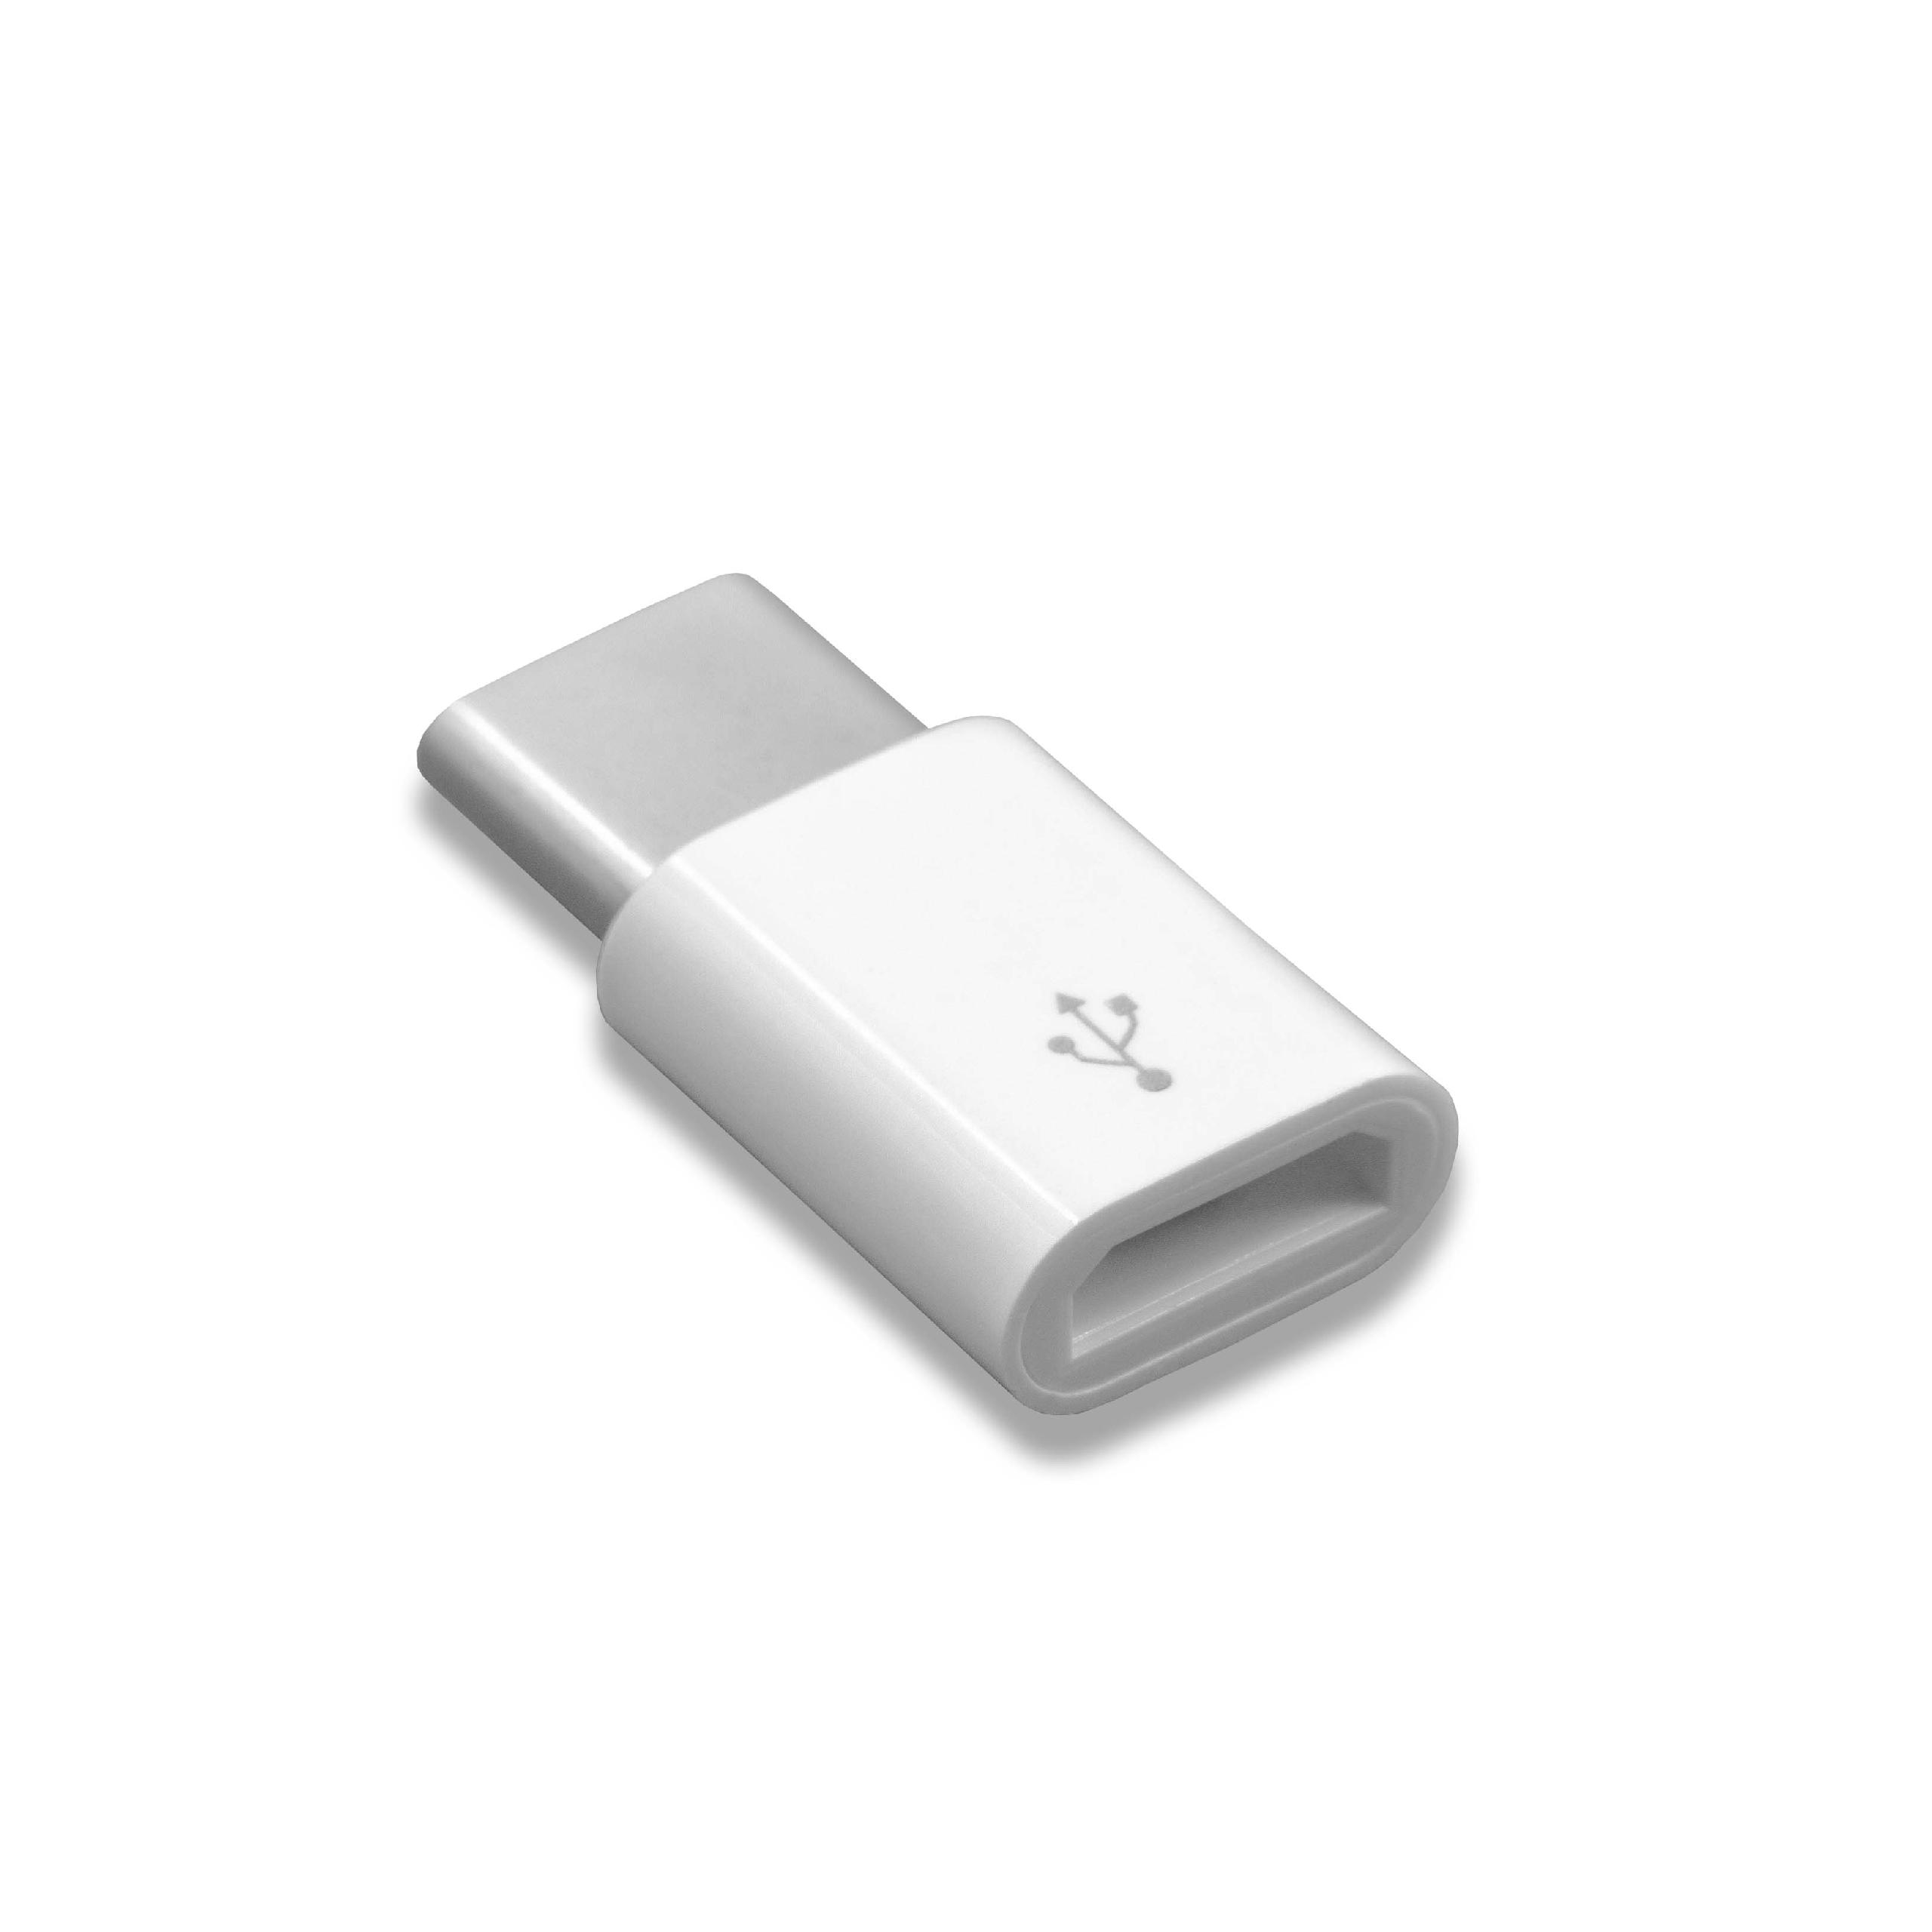 Adapter OTG USB Type C (männlich) auf Micro USB (weiblich) für Smartphone, Tablet, Laptop, Notebook, PC